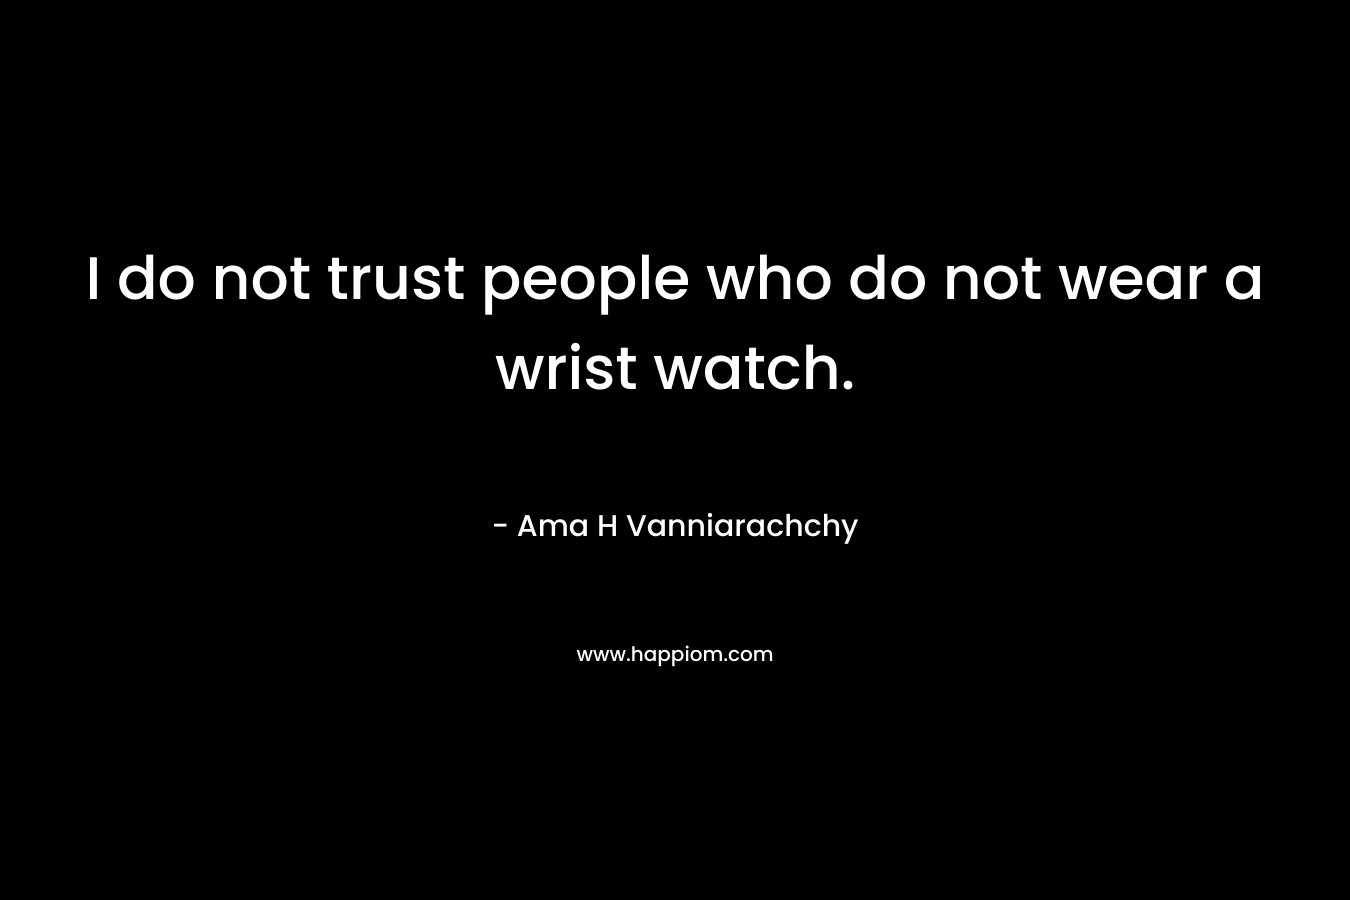 I do not trust people who do not wear a wrist watch.